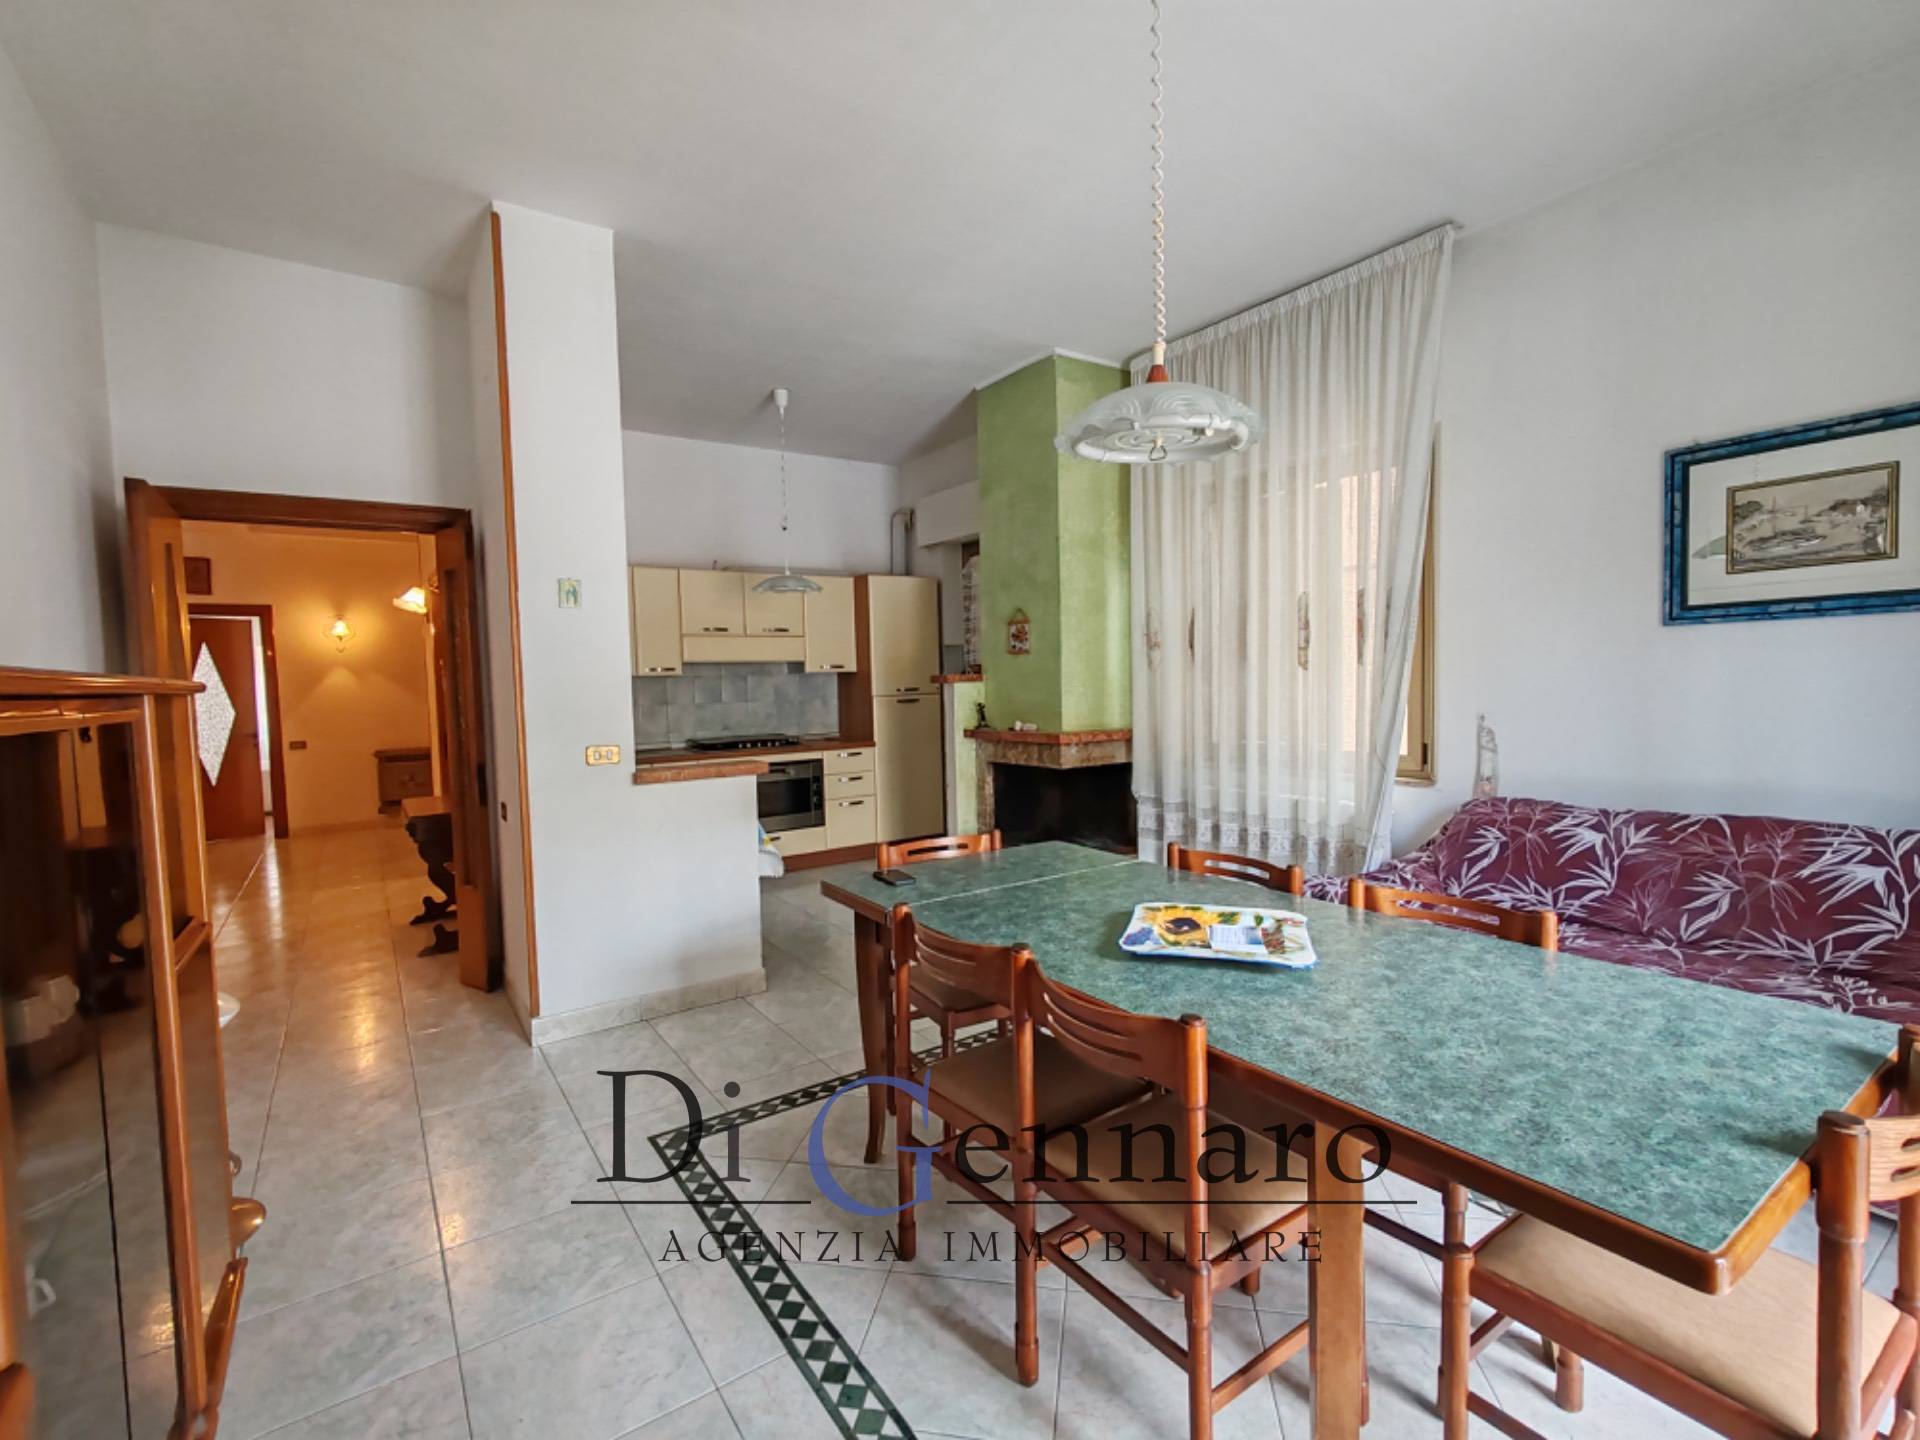 Appartamento arredato in affitto, Alba Adriatica zona mare